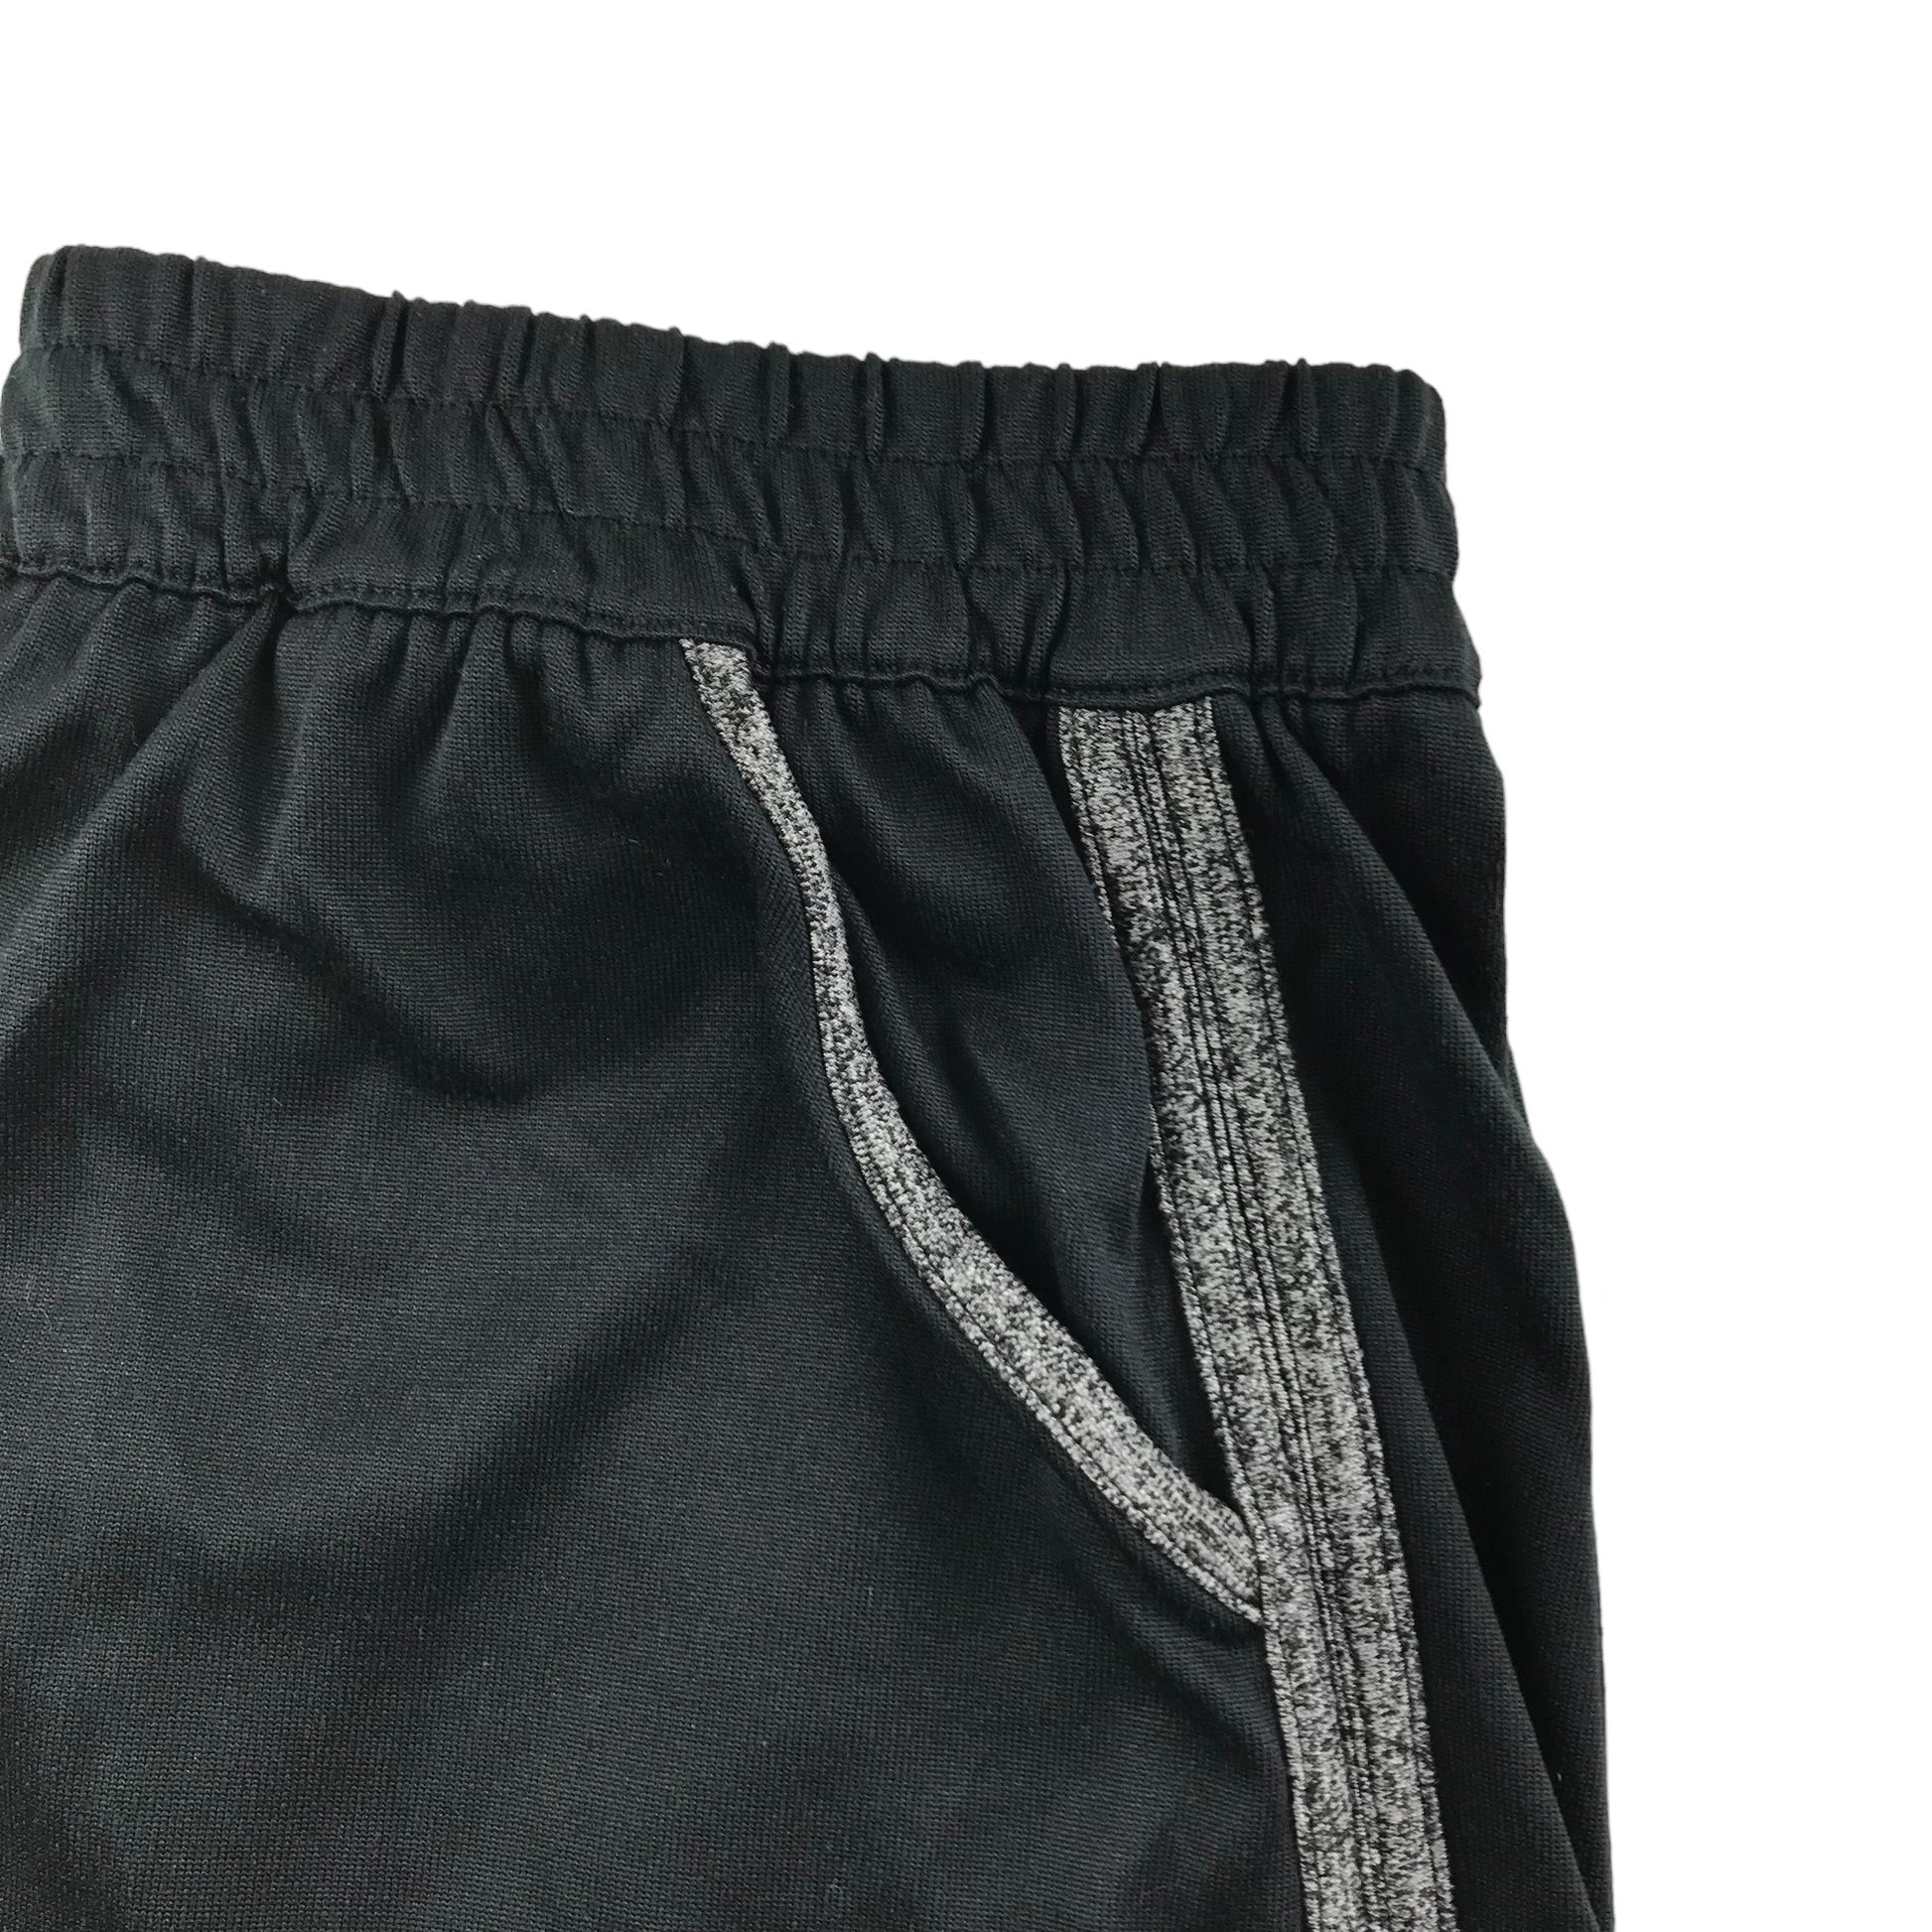 All UA Gear - Shorts in Black